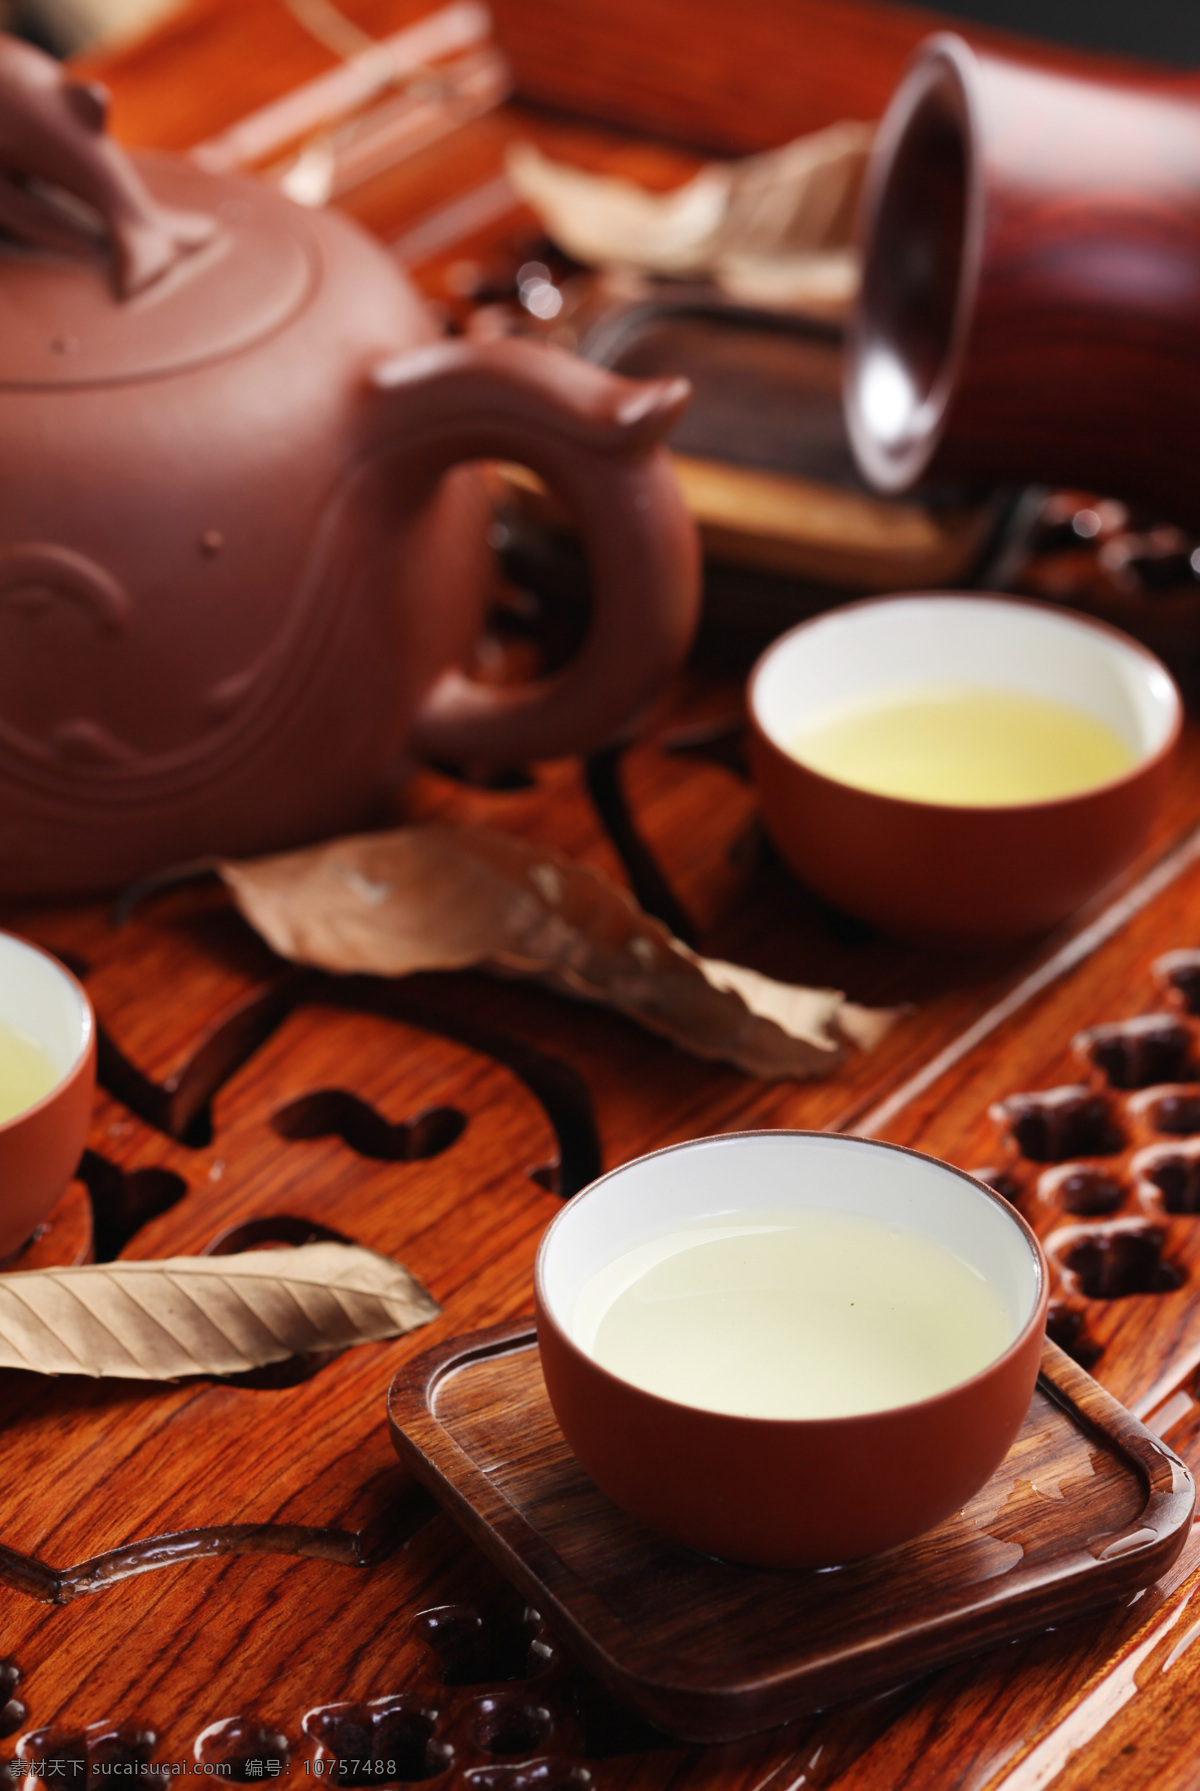 喝茶 茶水 铁观音 饮茶 茶叶图片 茶叶 餐饮美食 饮料酒水